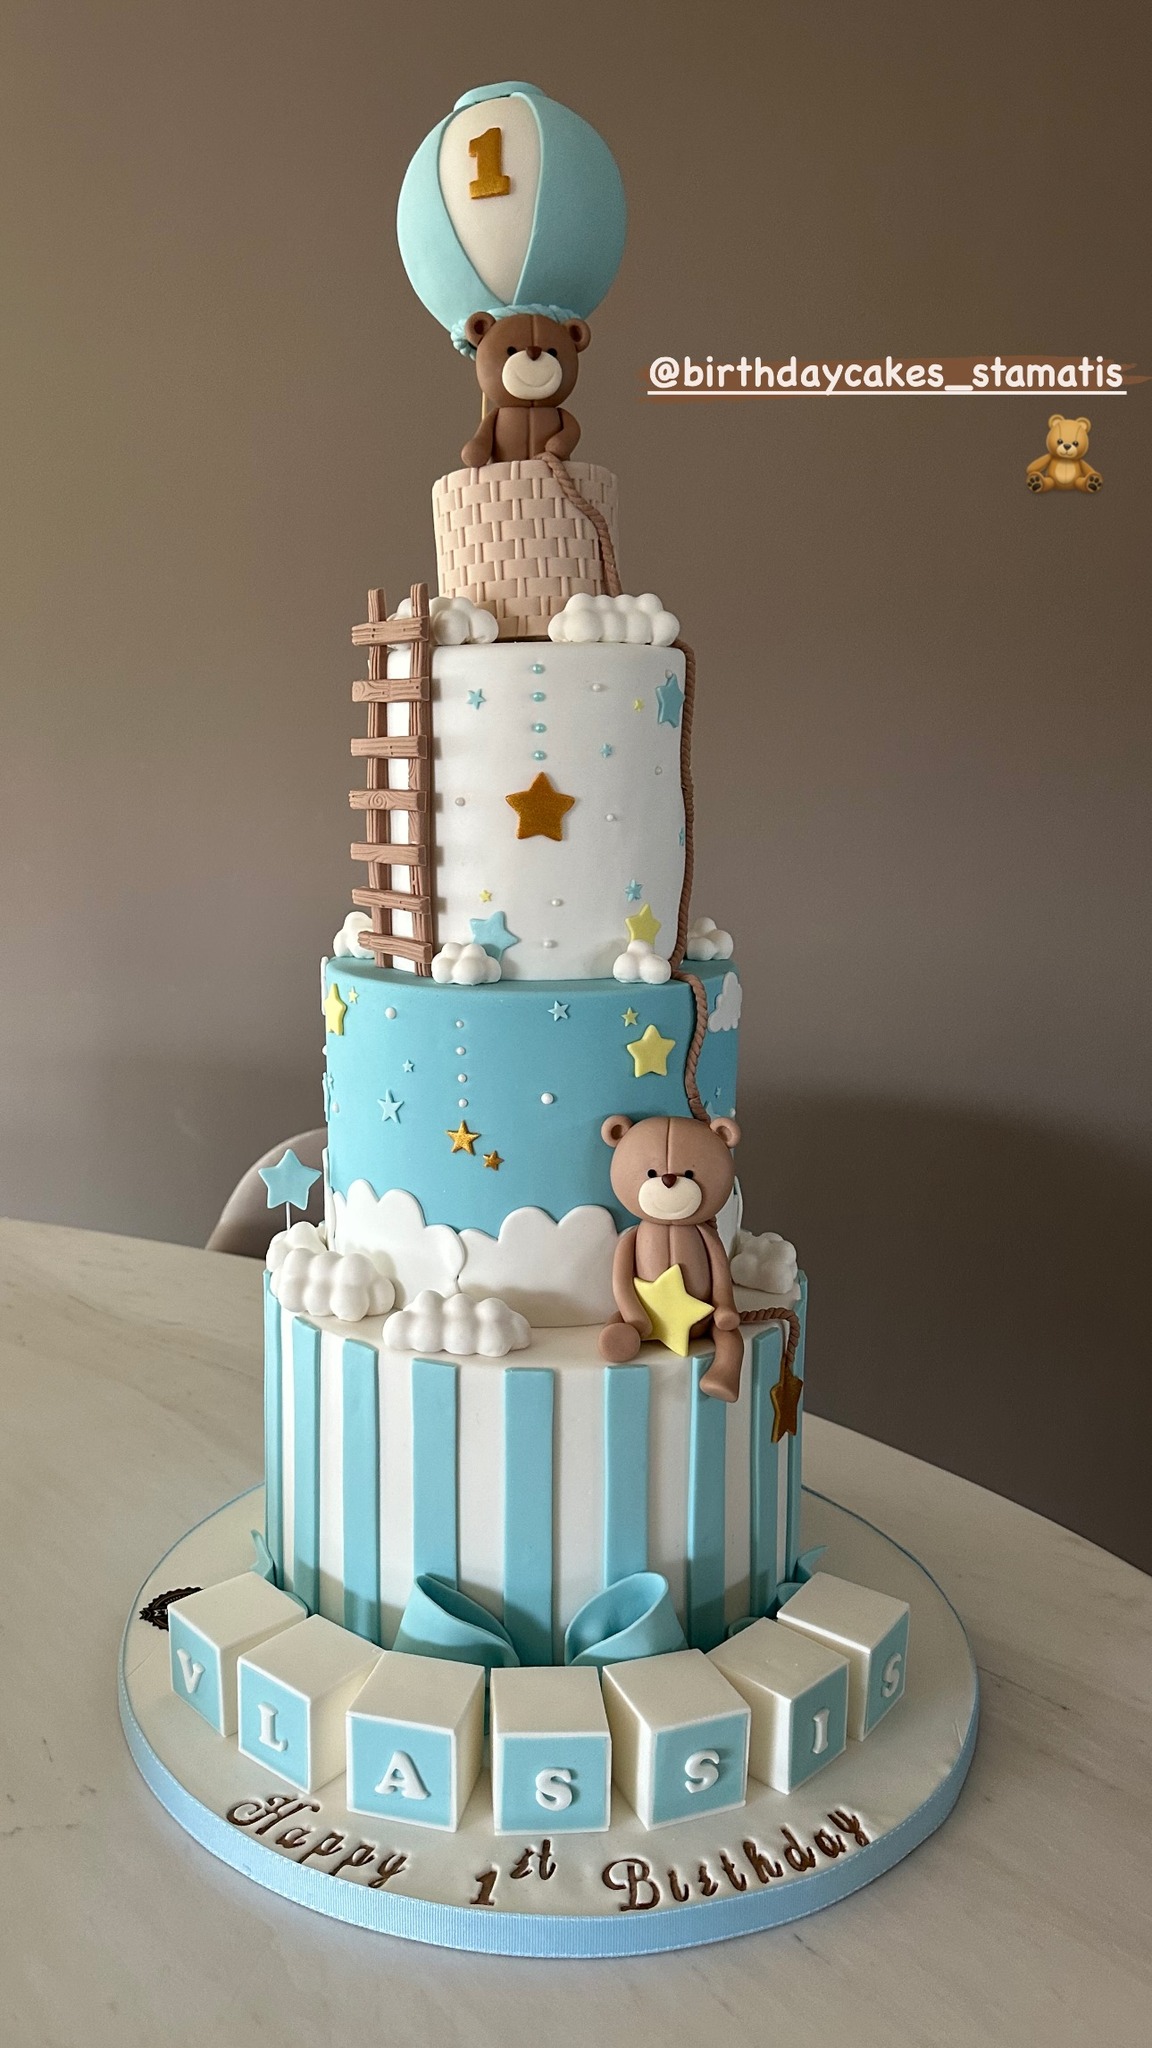 Η τούρτα για τα πρώτα γενέθλια του γιου της Κωνσταντίνας Σπυροπούλου